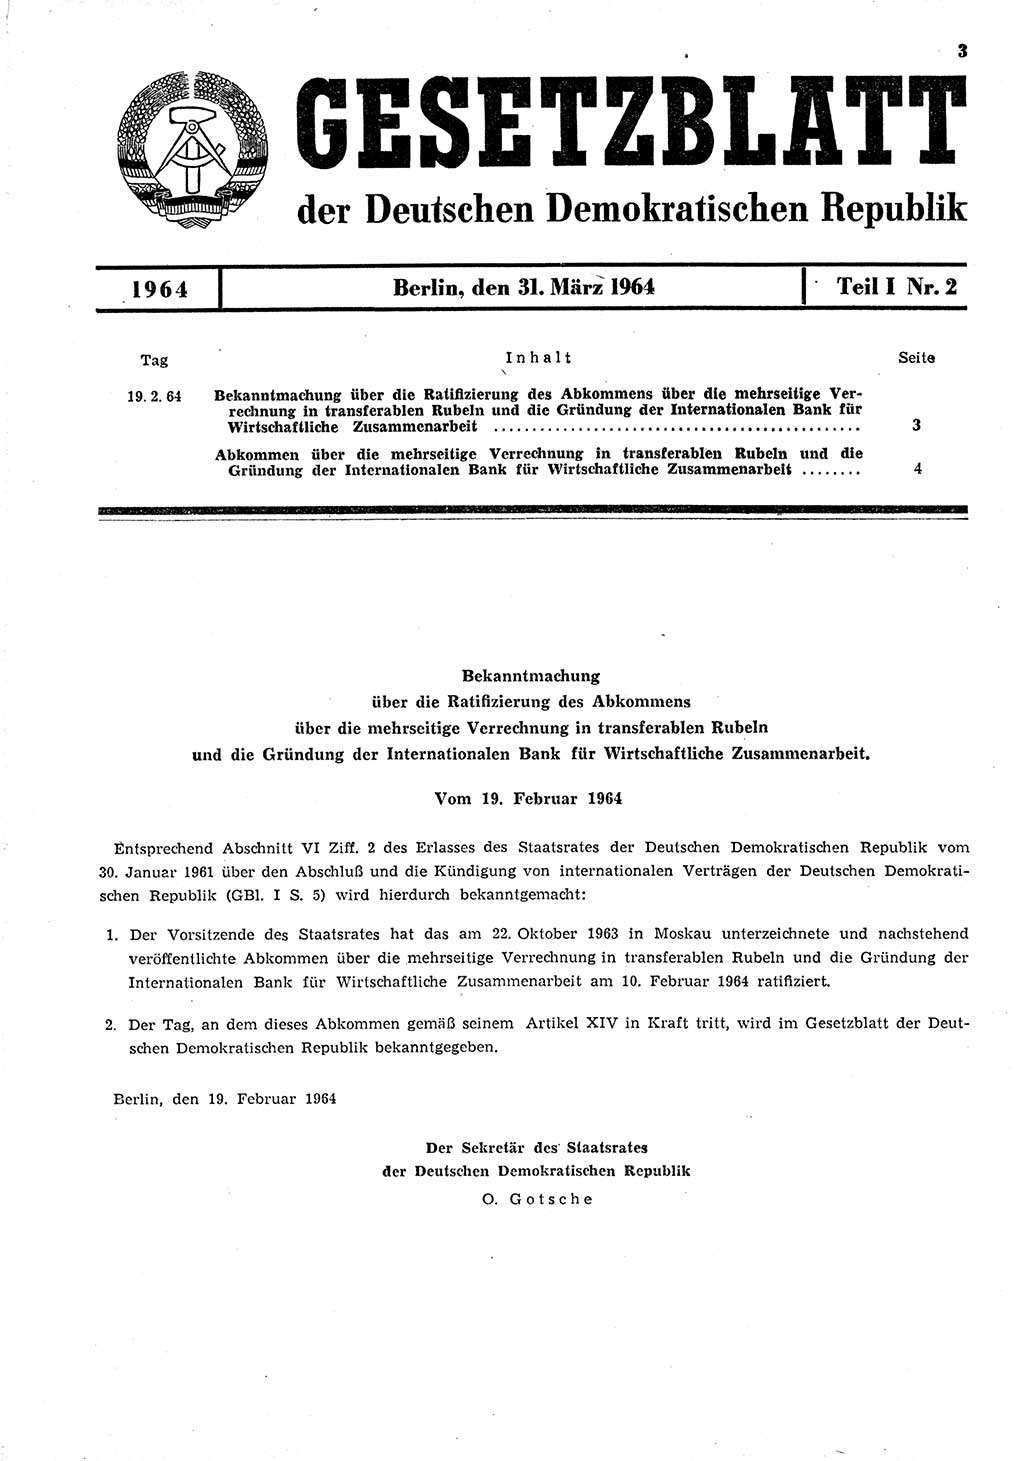 Gesetzblatt (GBl.) der Deutschen Demokratischen Republik (DDR) Teil Ⅰ 1964, Seite 3 (GBl. DDR Ⅰ 1964, S. 3)